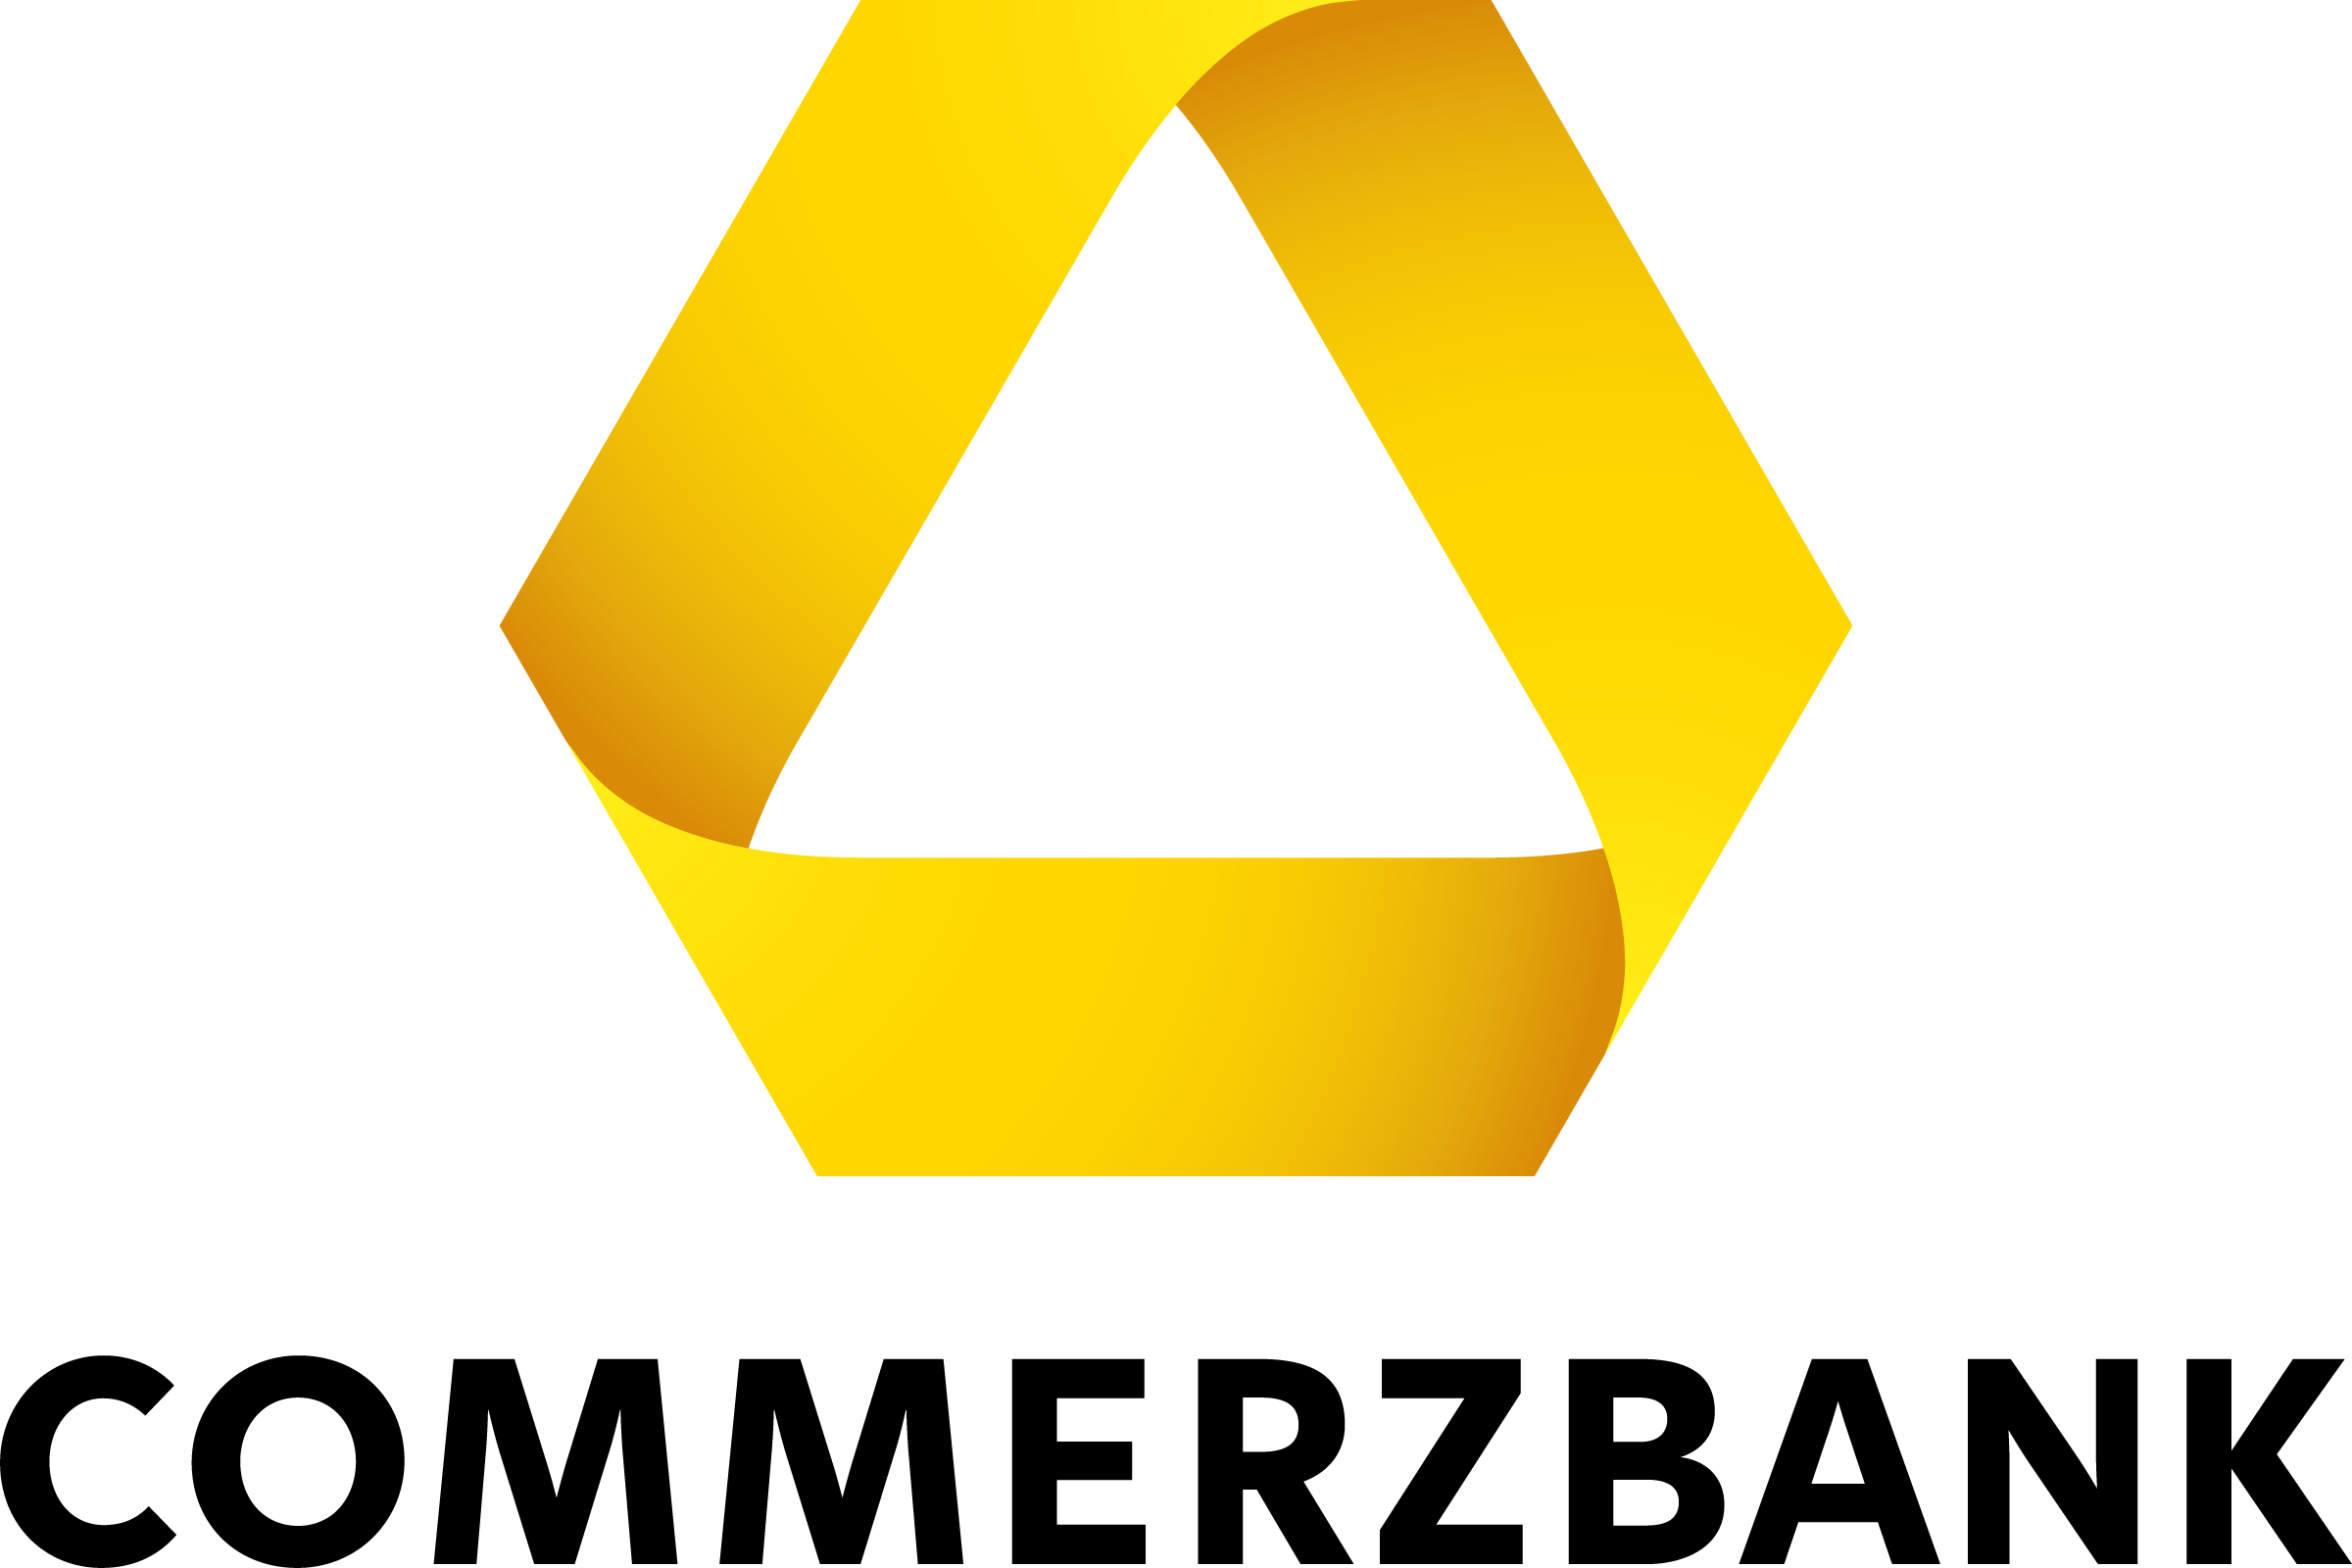 Logo Commerzbank AG